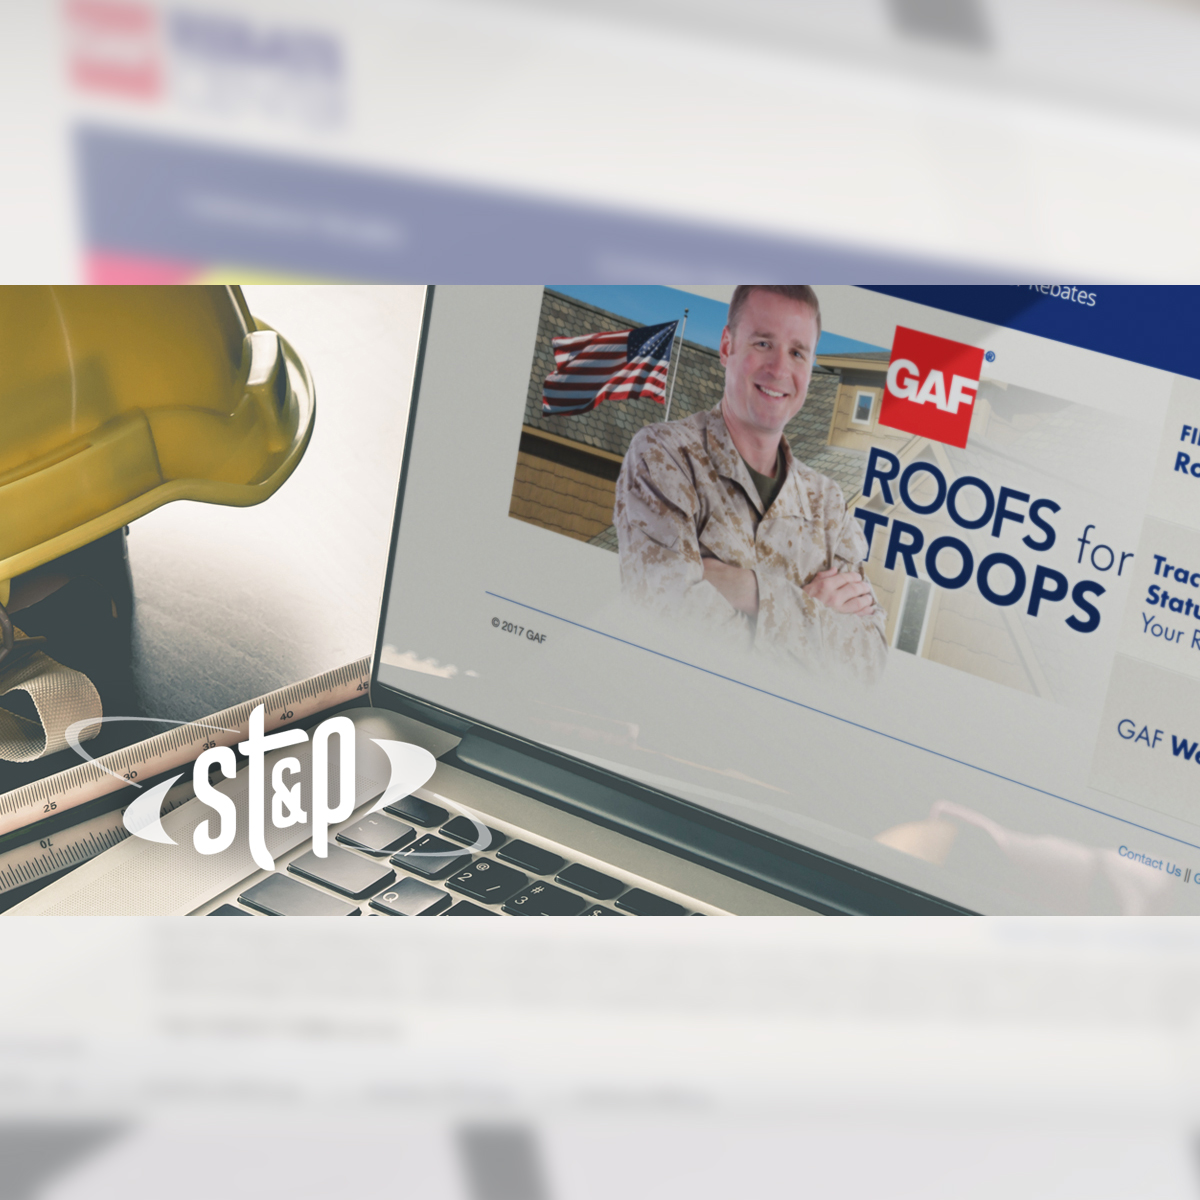 gaf-roofs-for-troops-rebate-portfolio-st-p-marketing